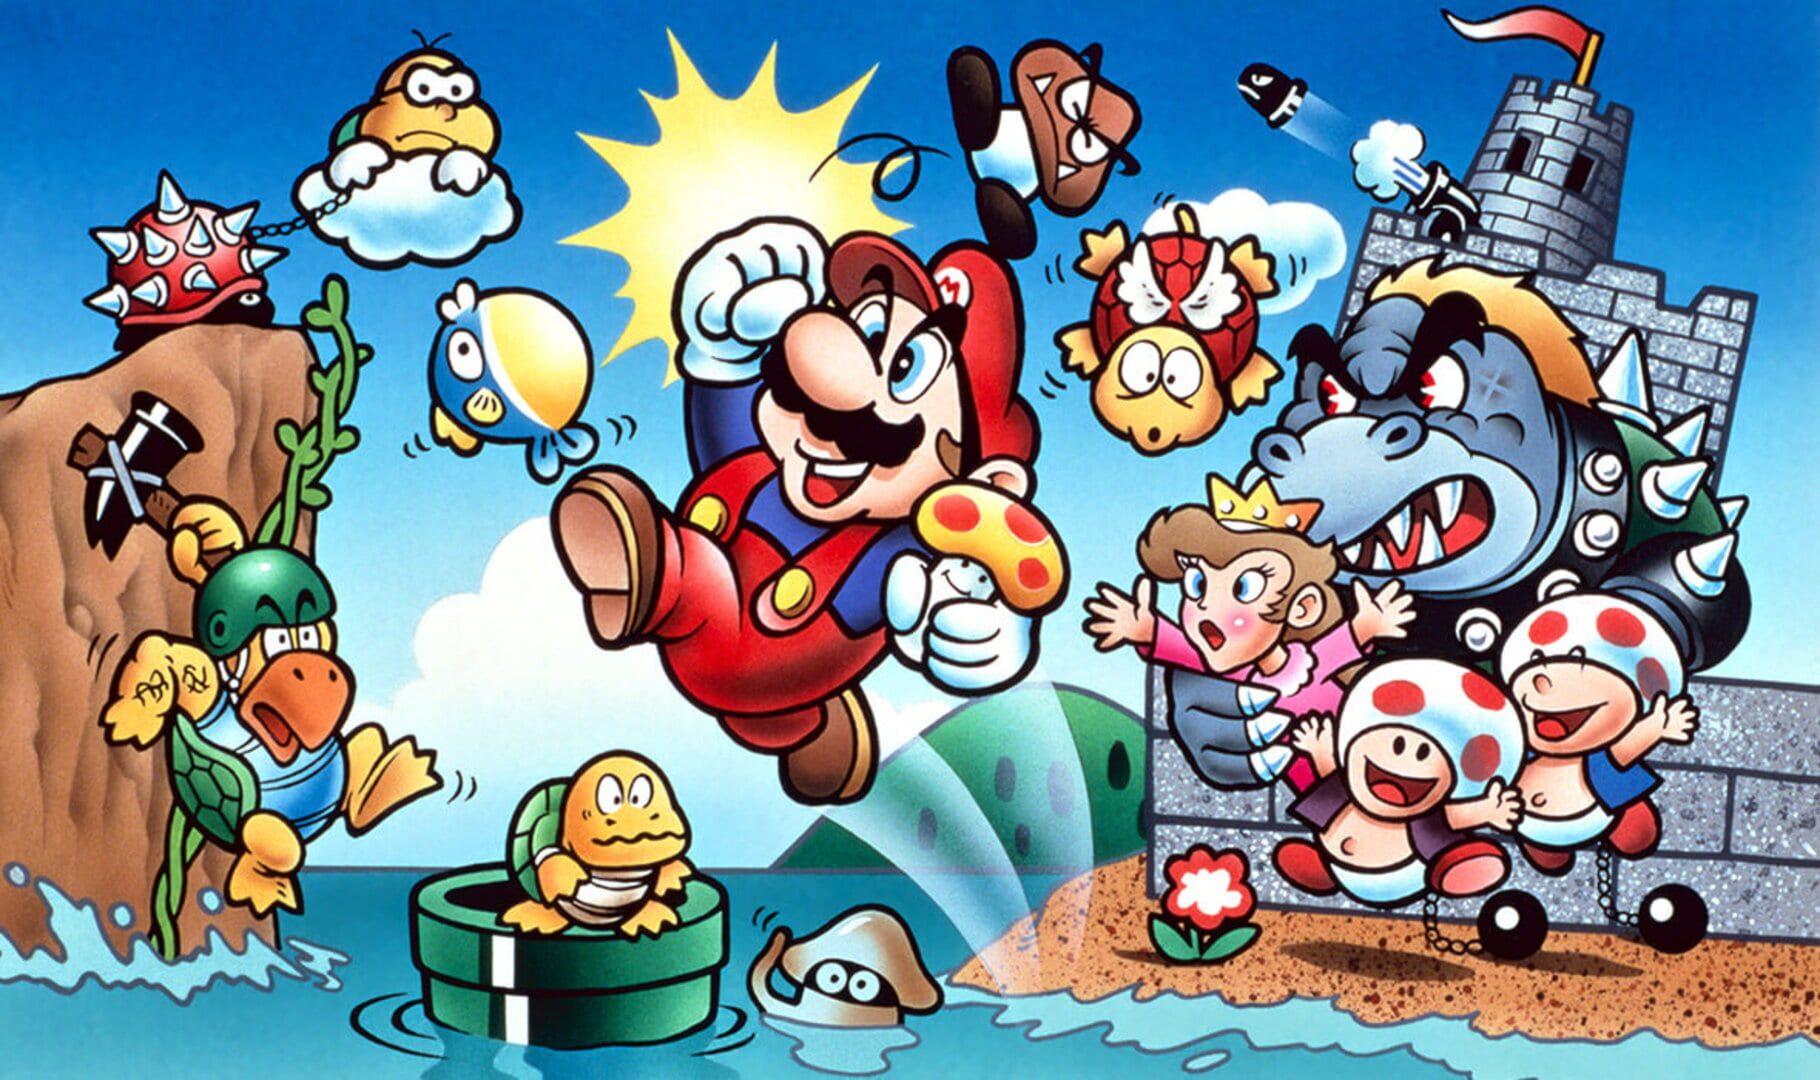 Arte - Super Mario Bros.